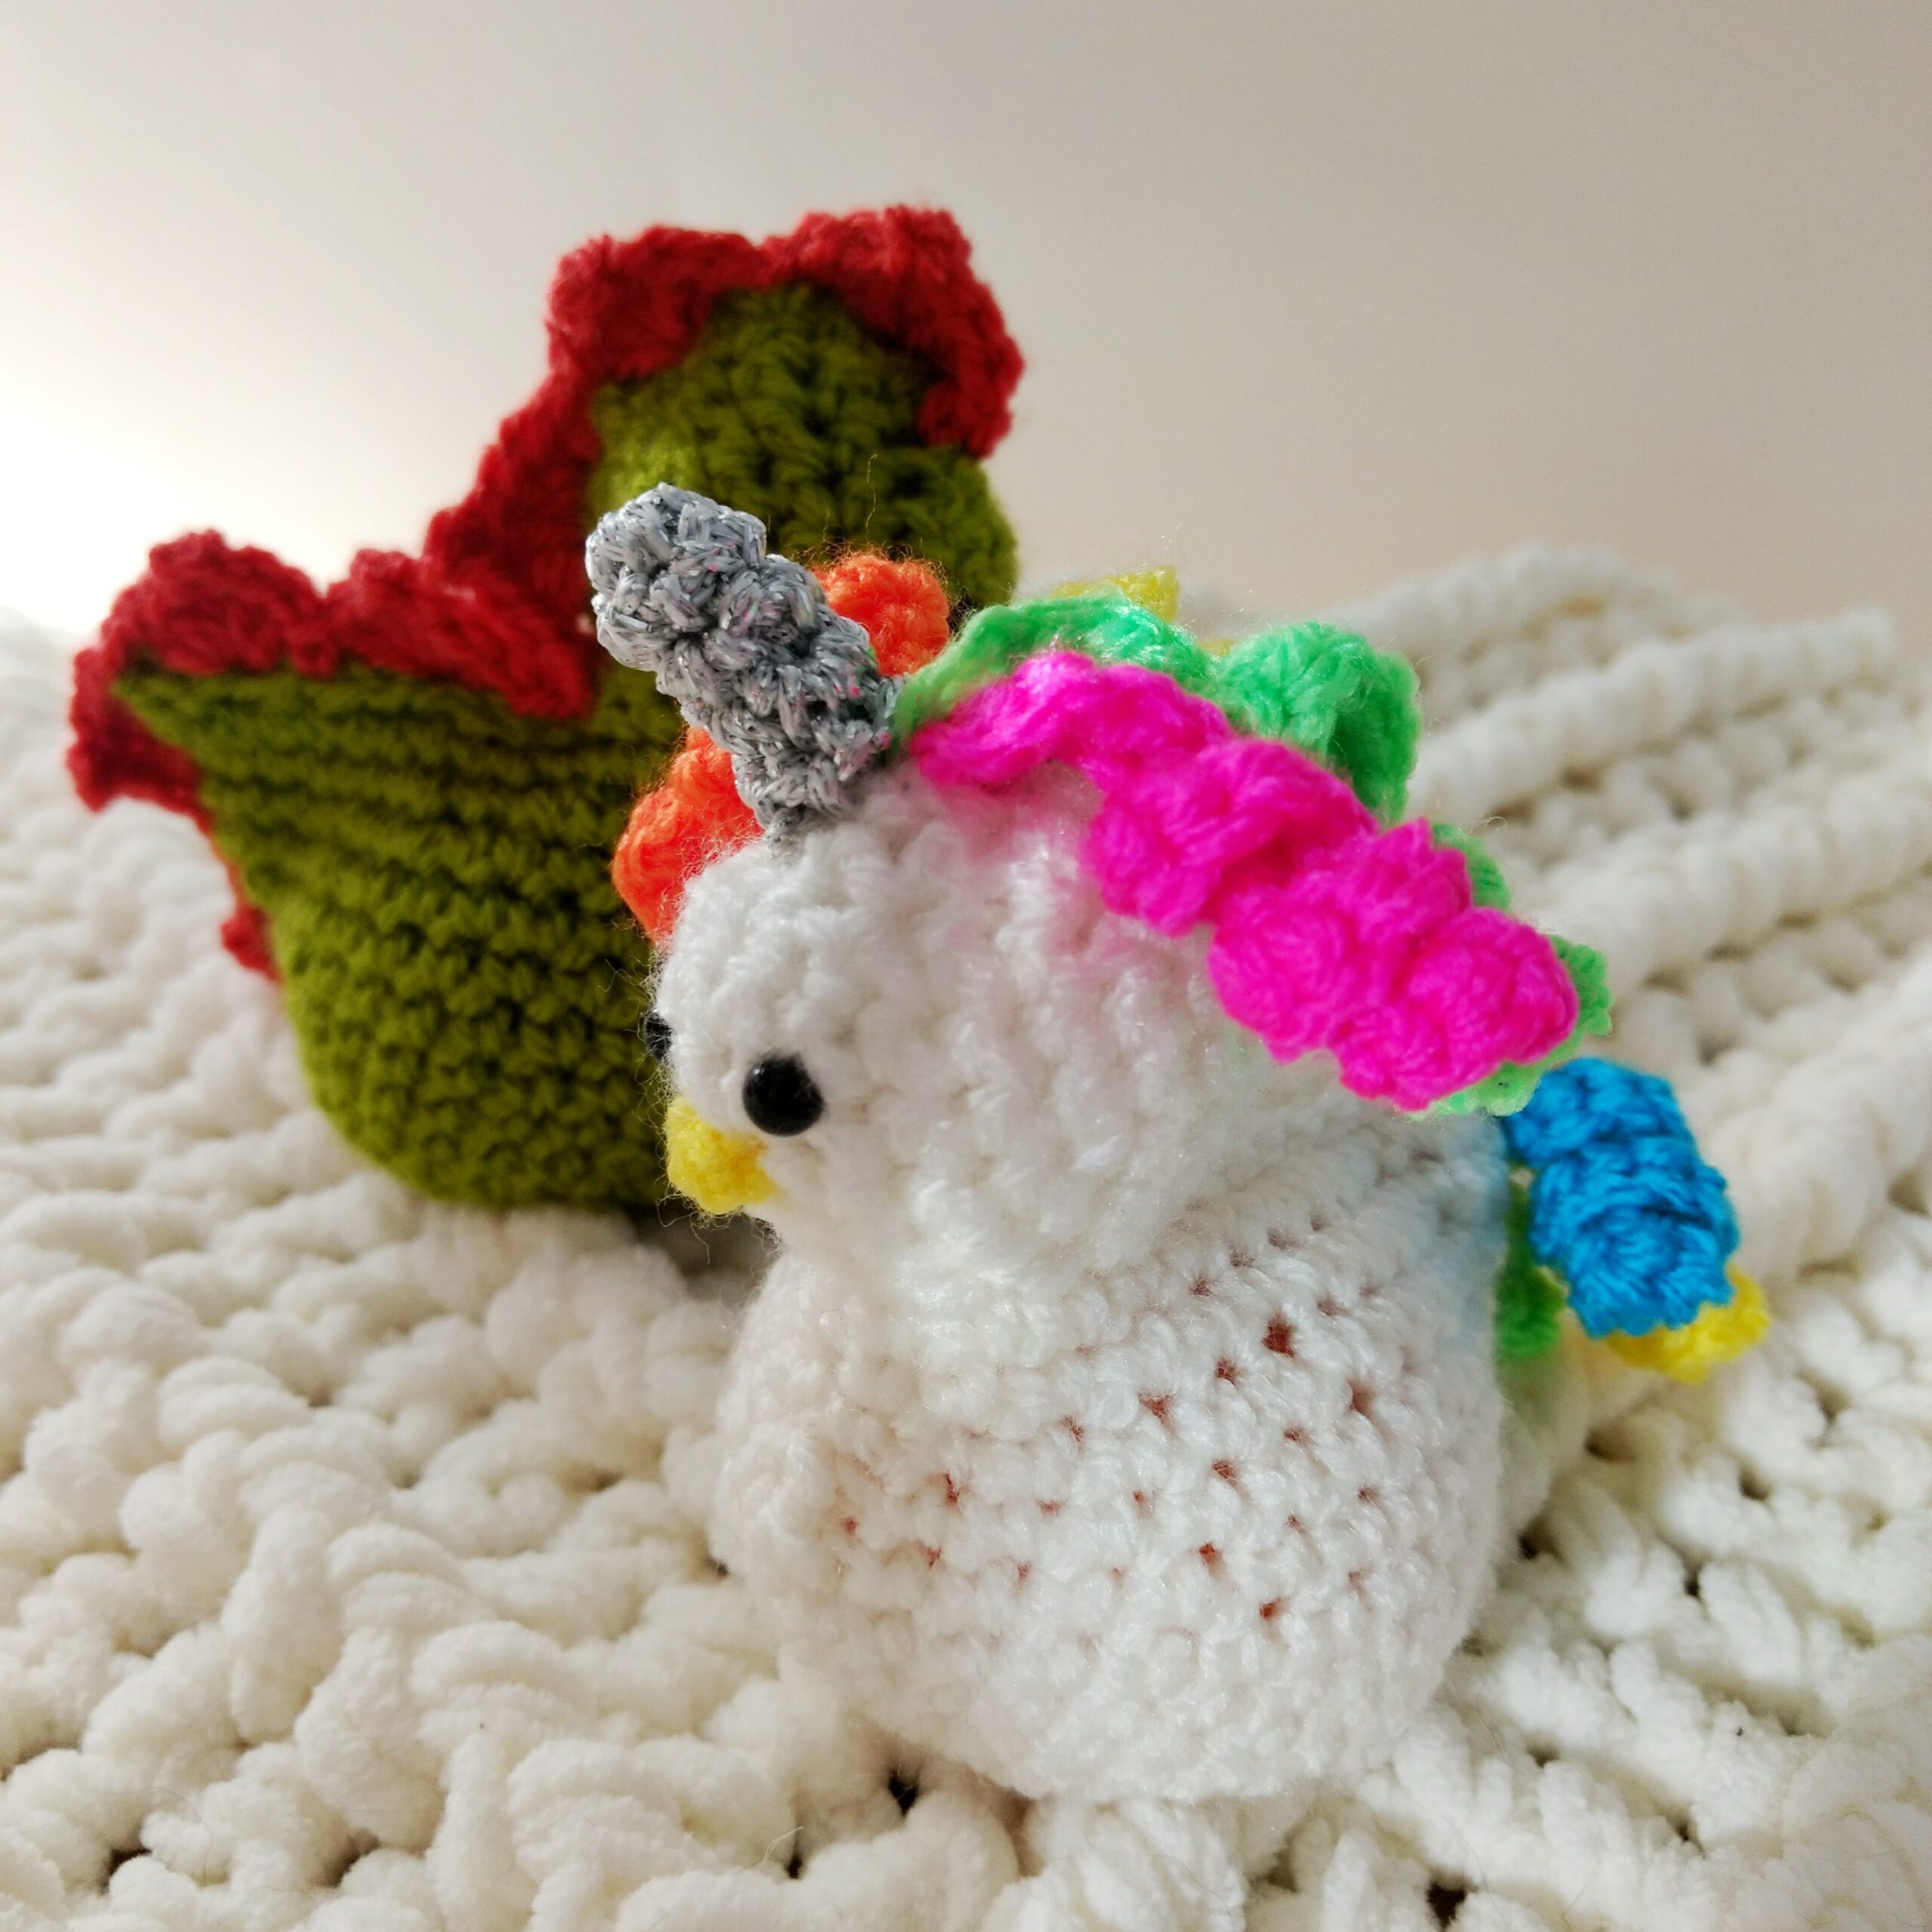 Easter crochet - Egg Cosy - Free Pattern - Crochet Cloudberry